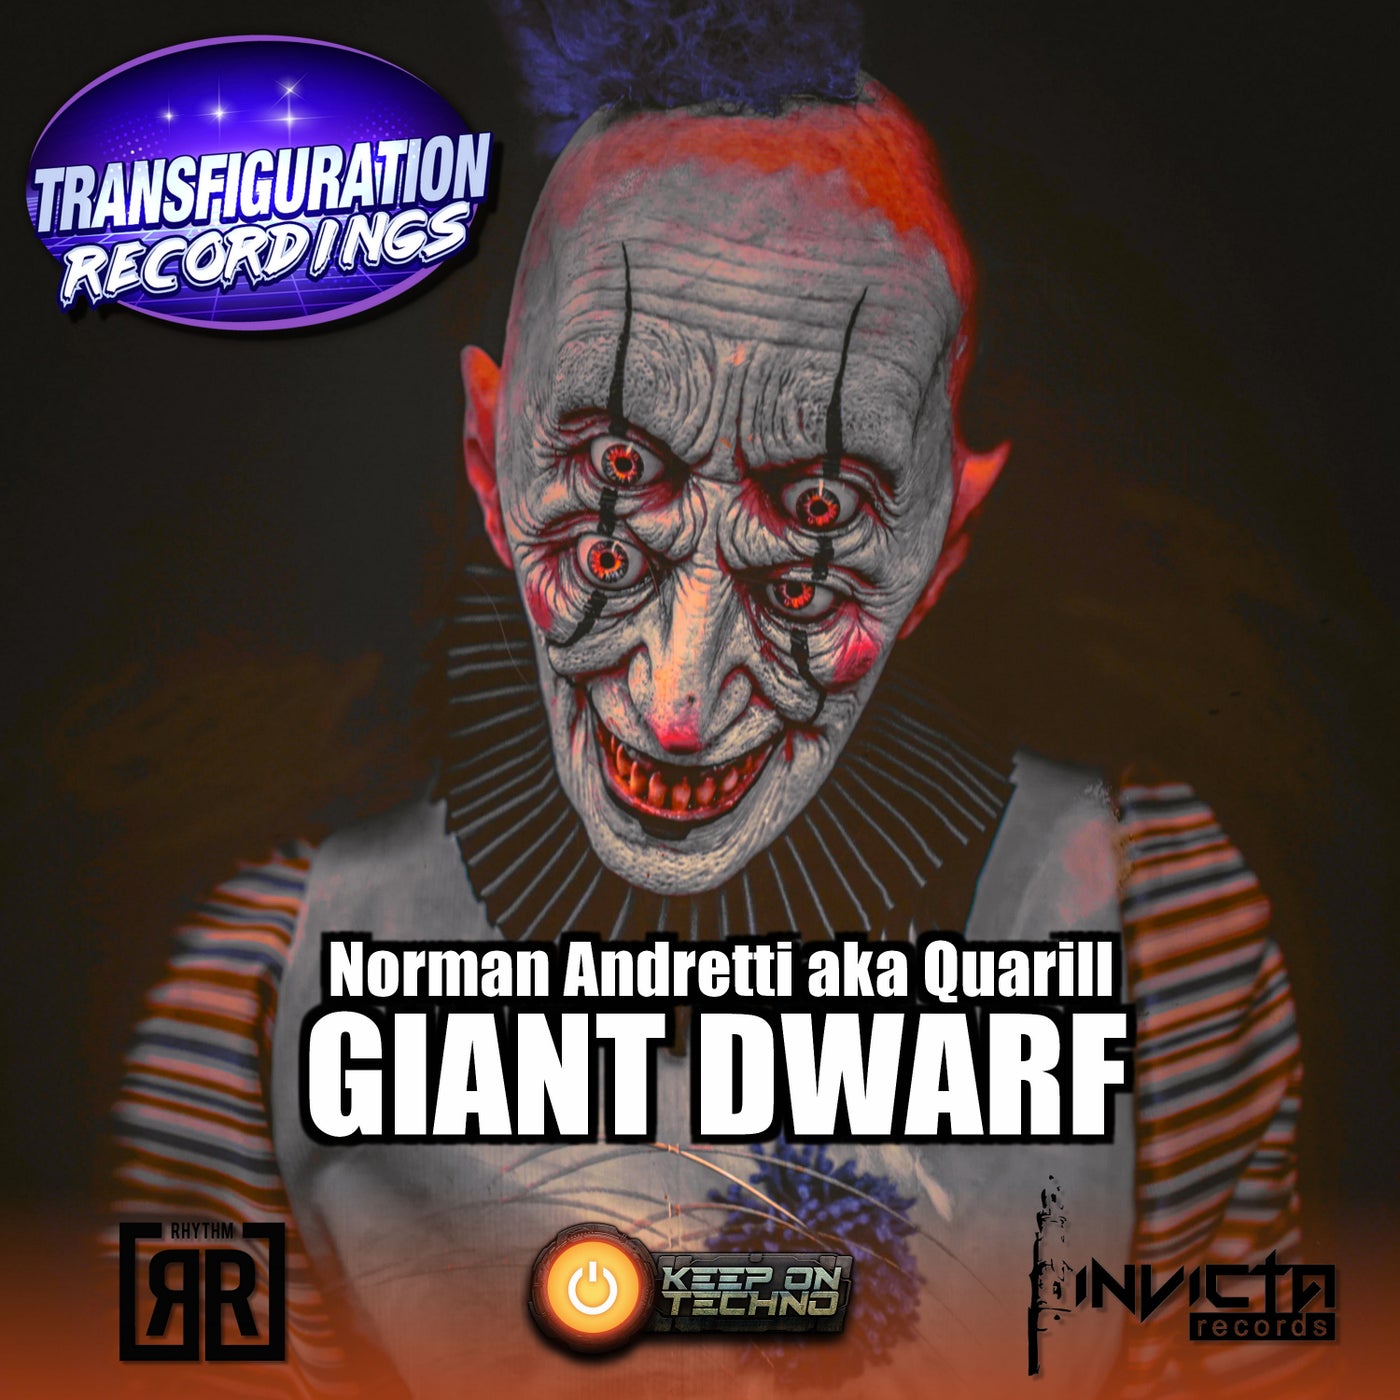 Giant Dwarf